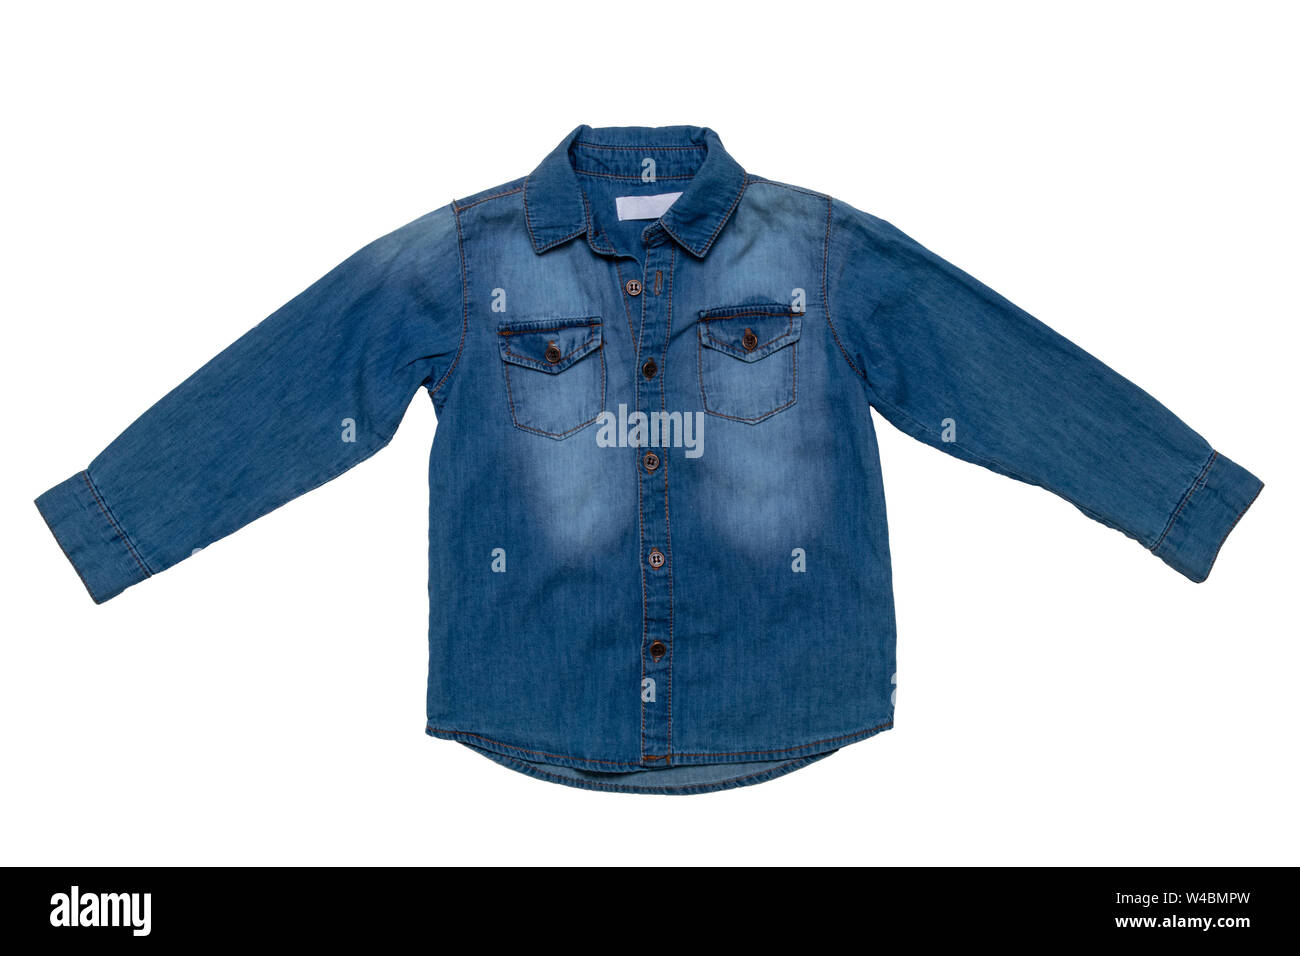 Camicie di jeans immagini e fotografie stock ad alta risoluzione - Alamy